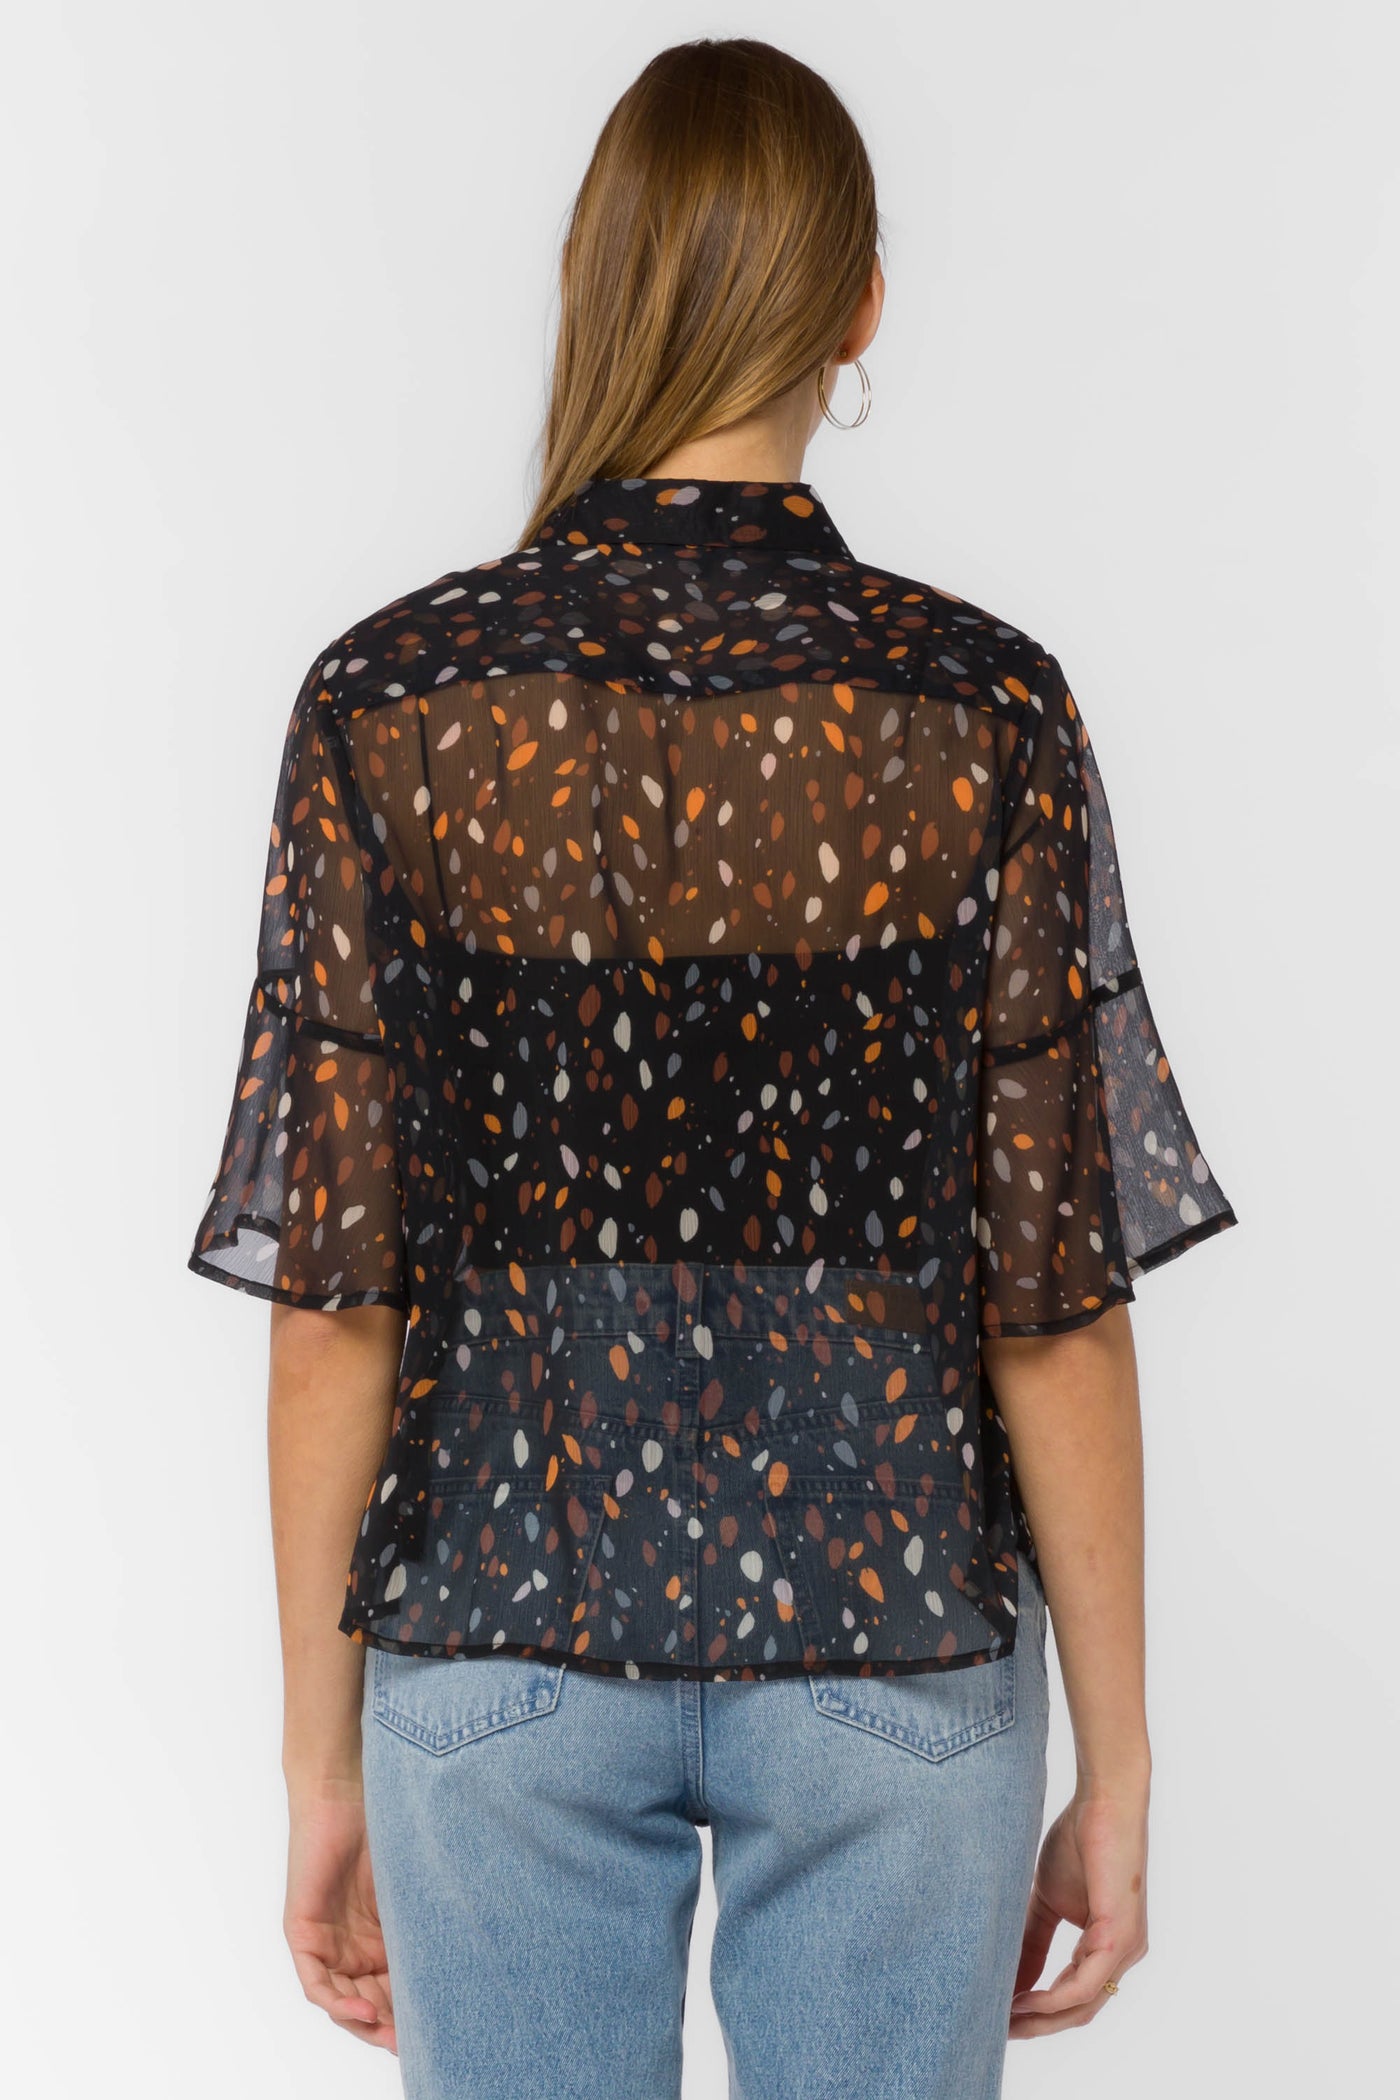 Jace Black Dots Shirt - Tops - Velvet Heart Clothing